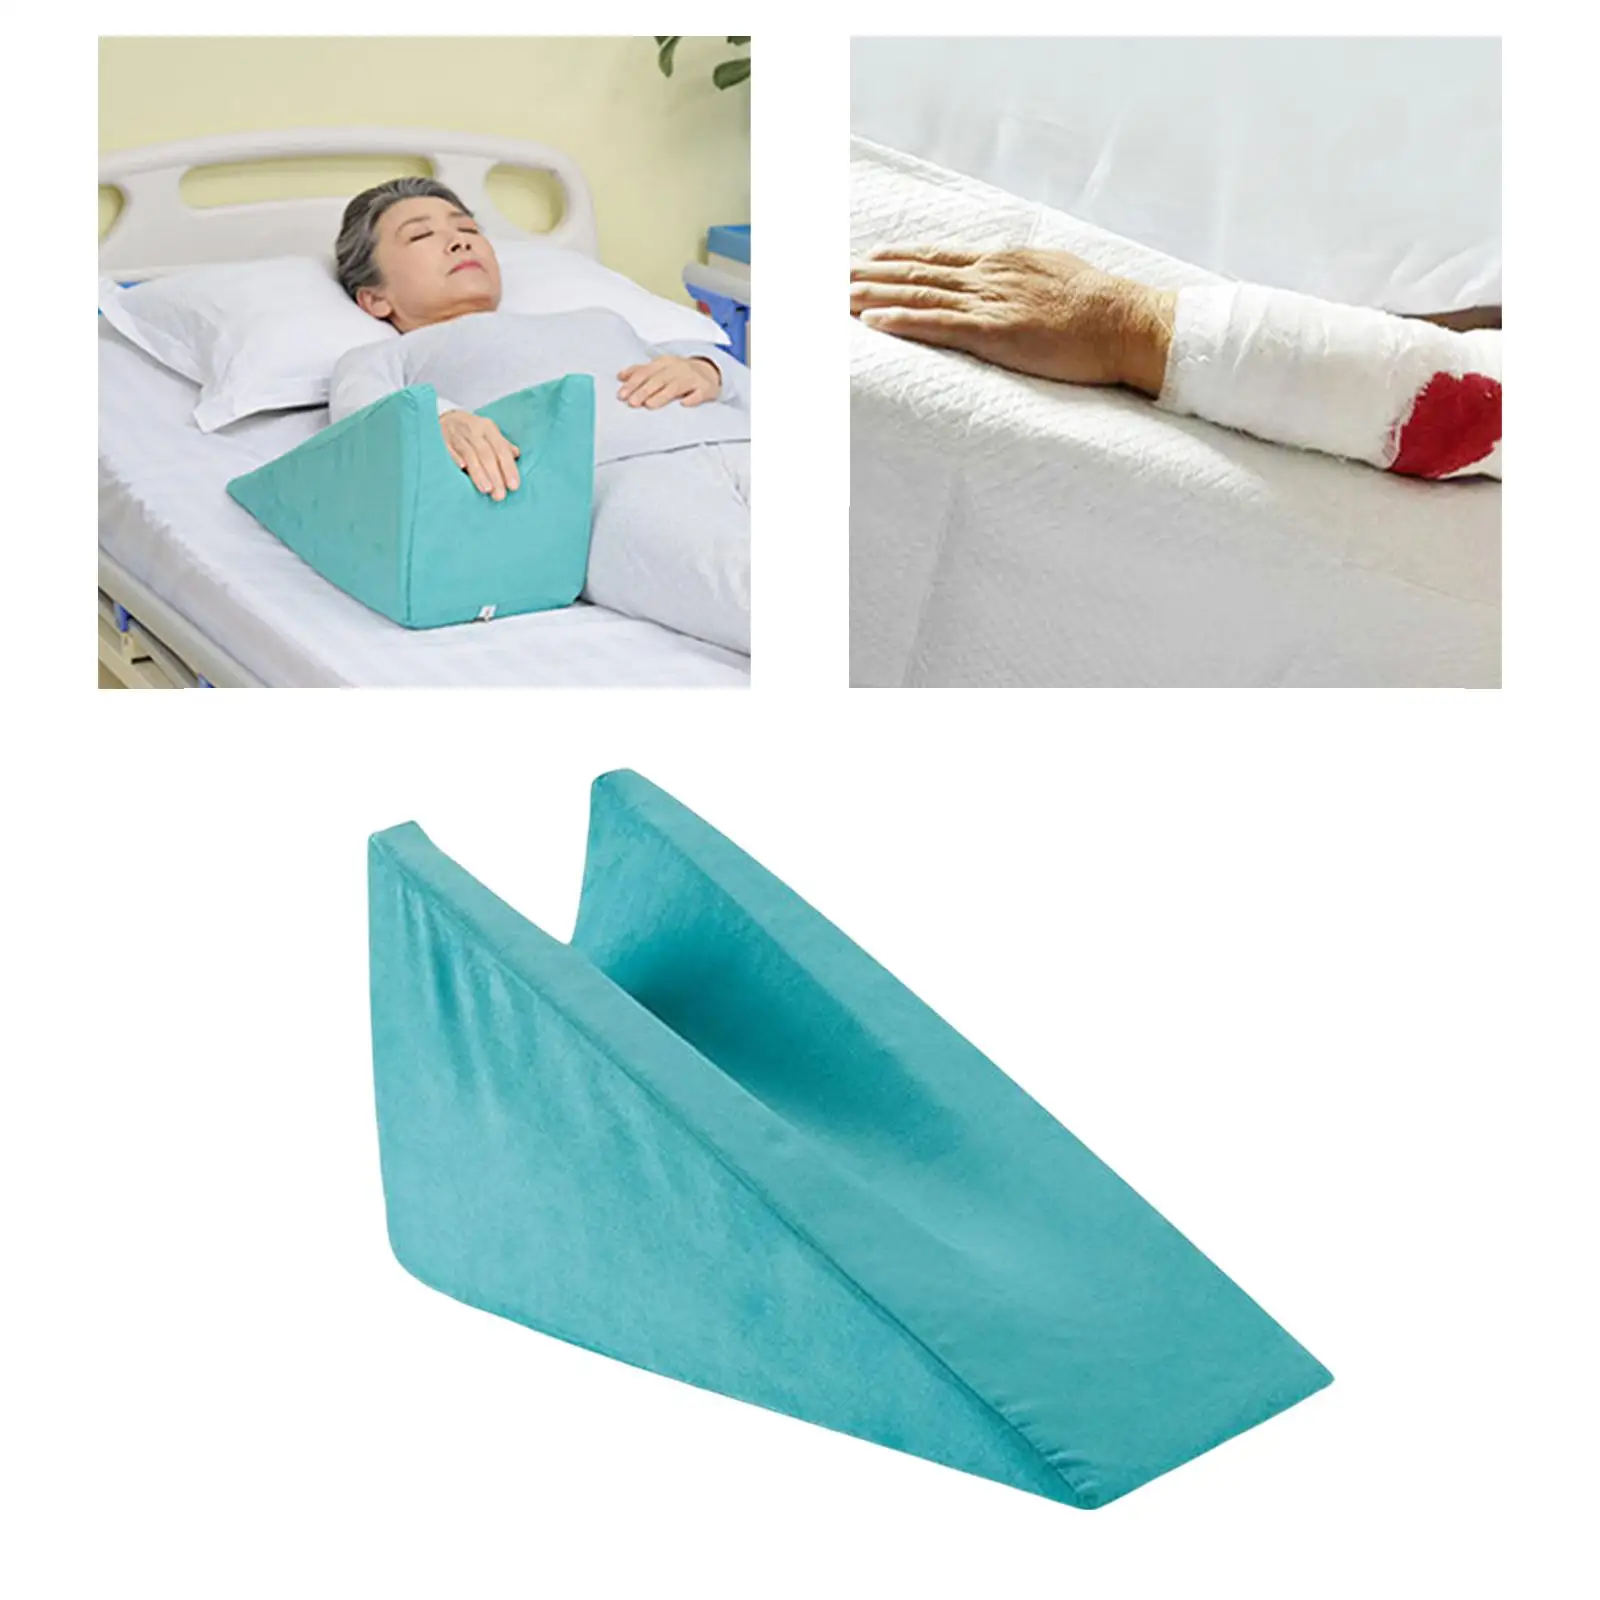 Подушка на руку для кормления и укачивания ребенка